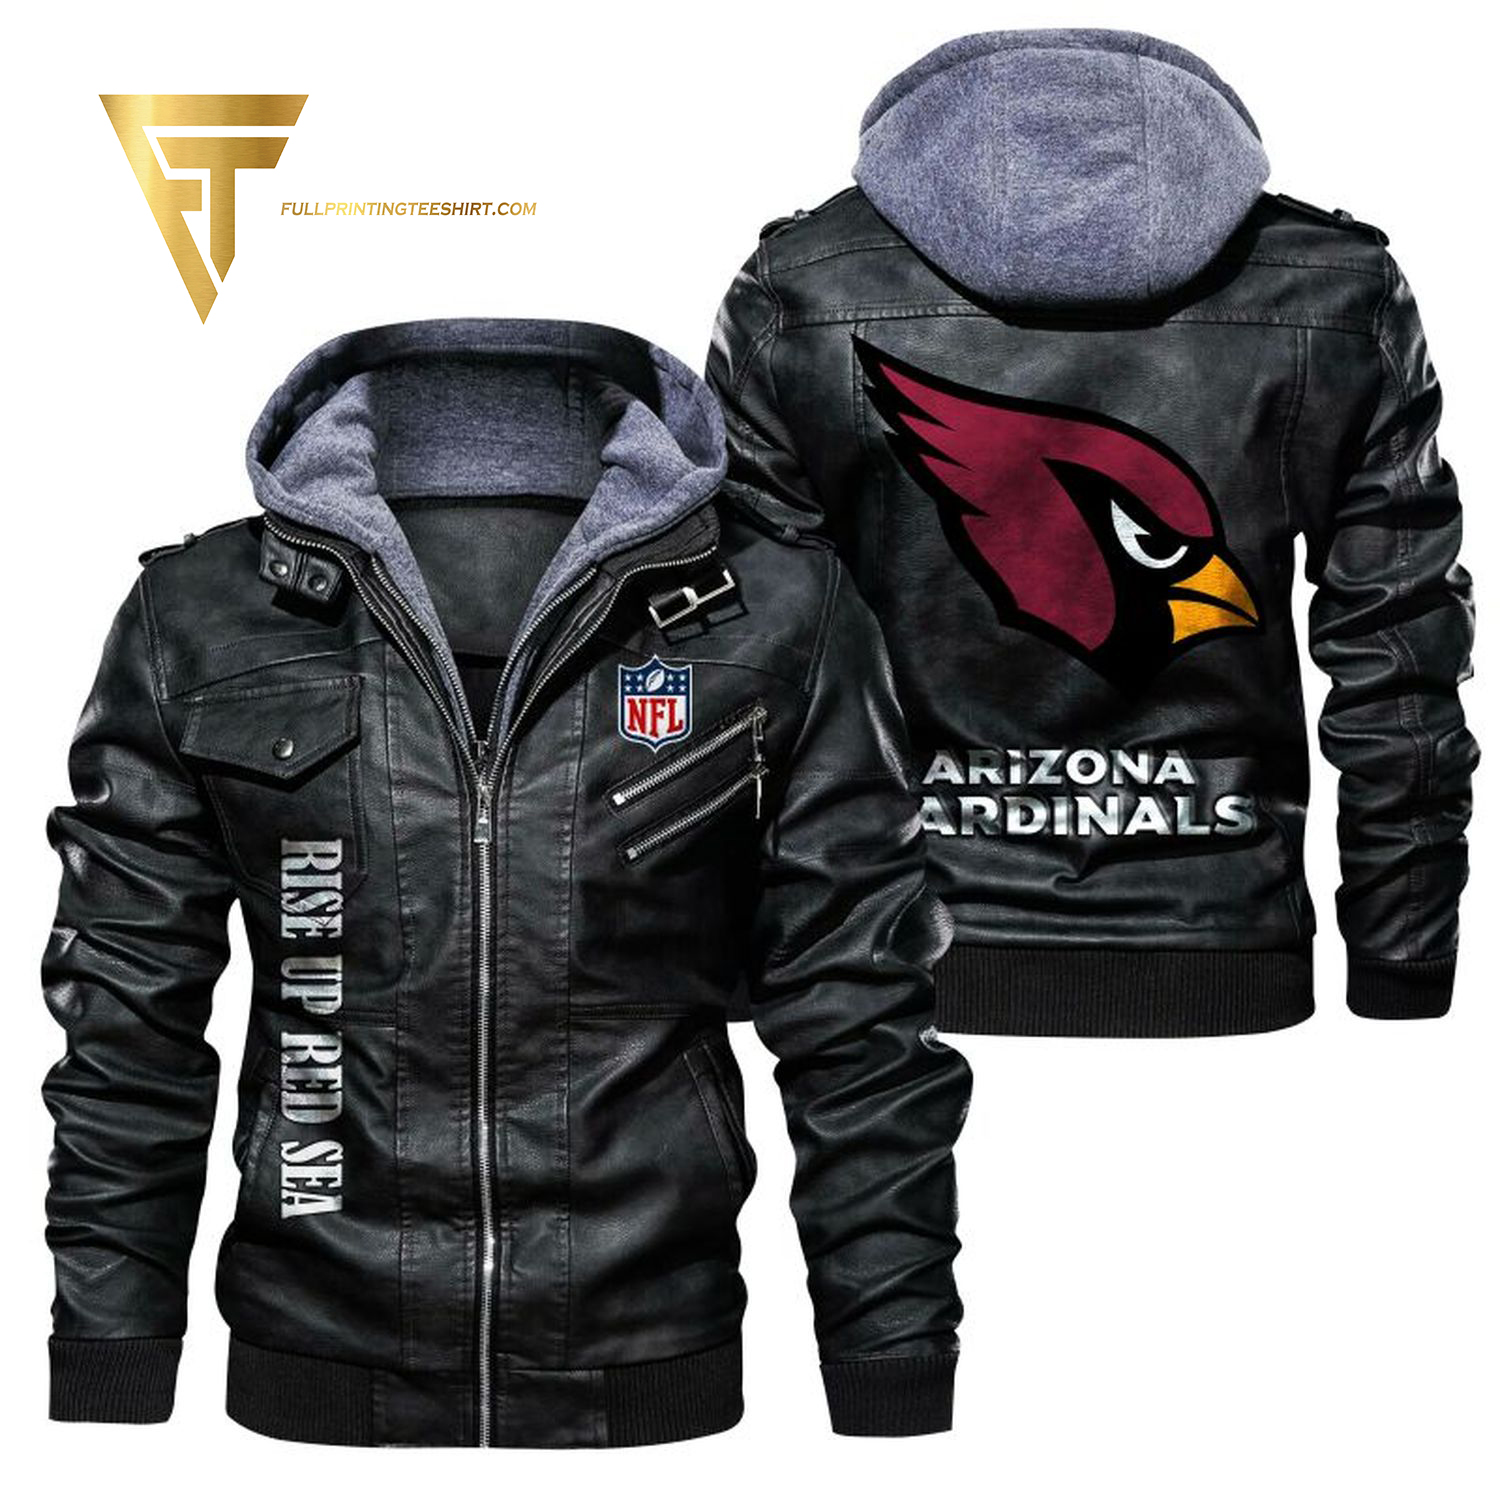 Arizona Cardinals Football Team Full Print Leather Jacket